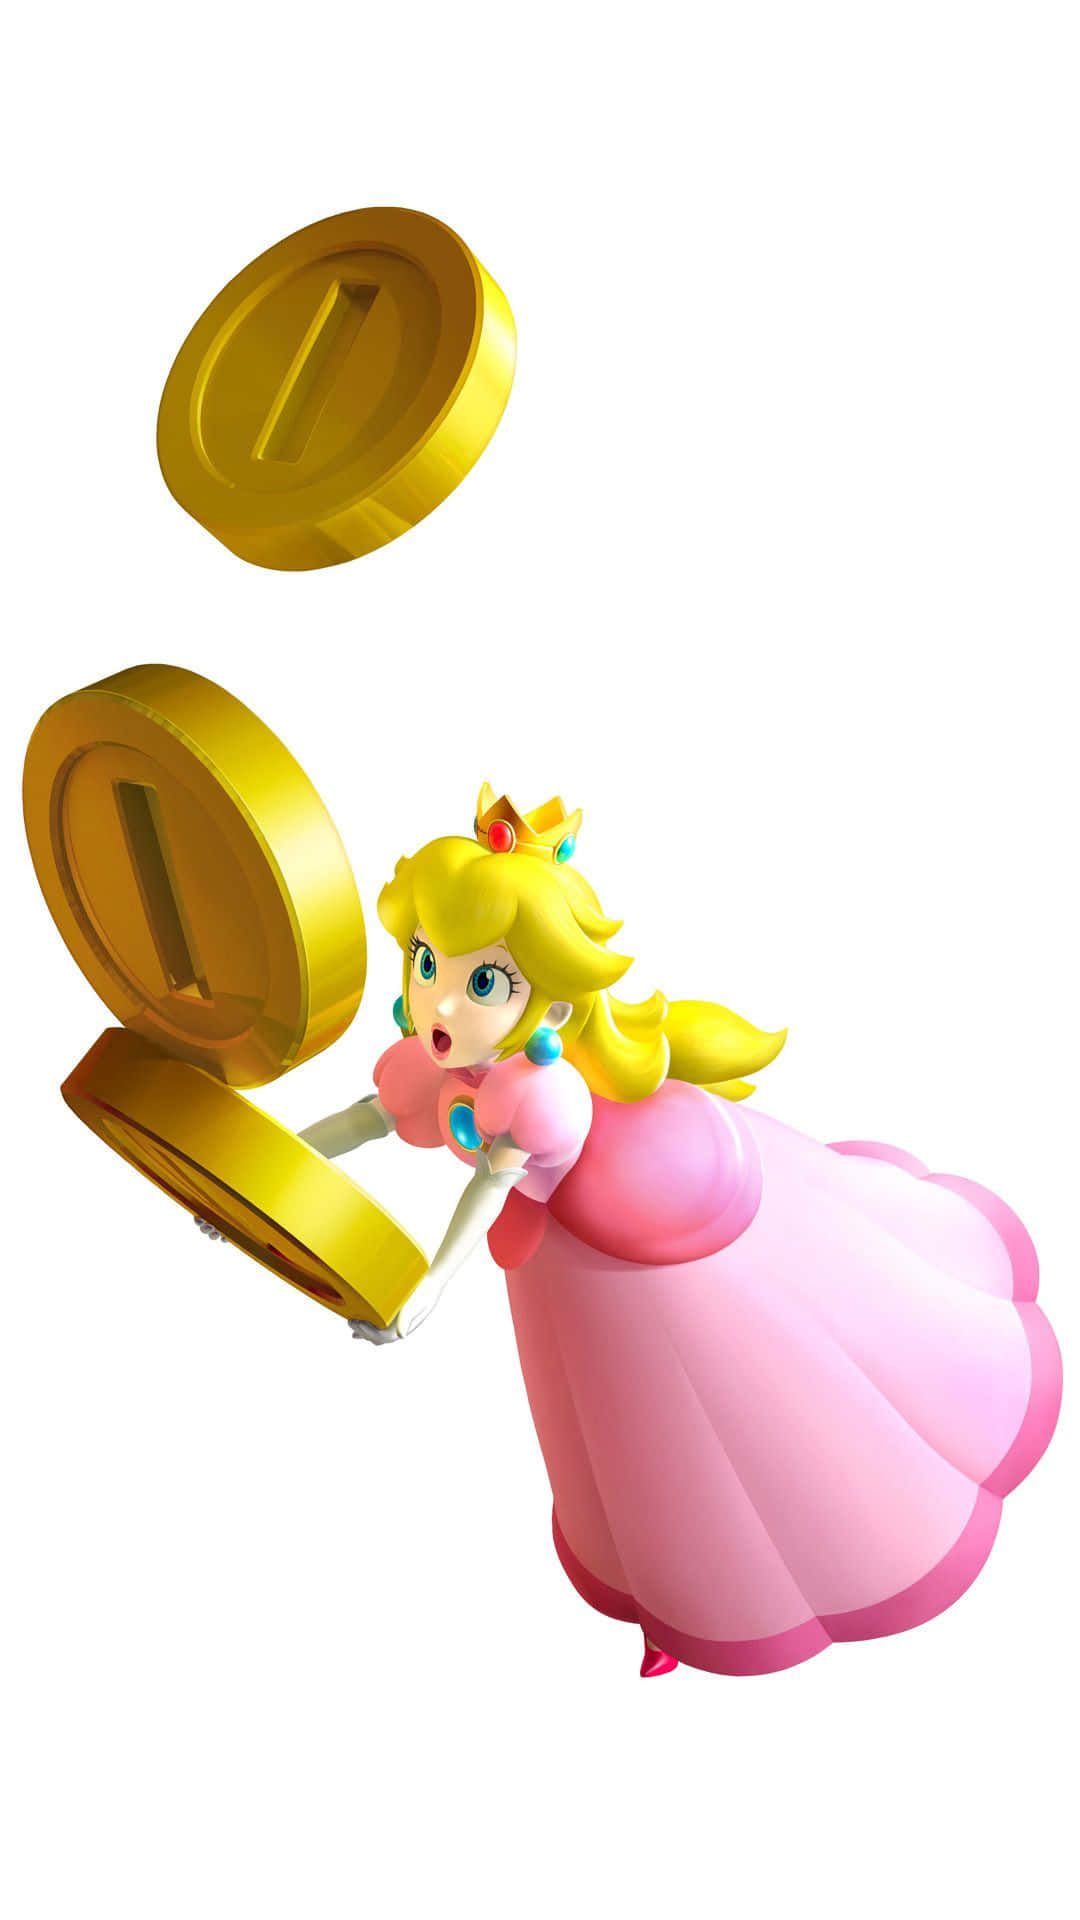 Princess Peach throwing a coin in the air - Princess Peach